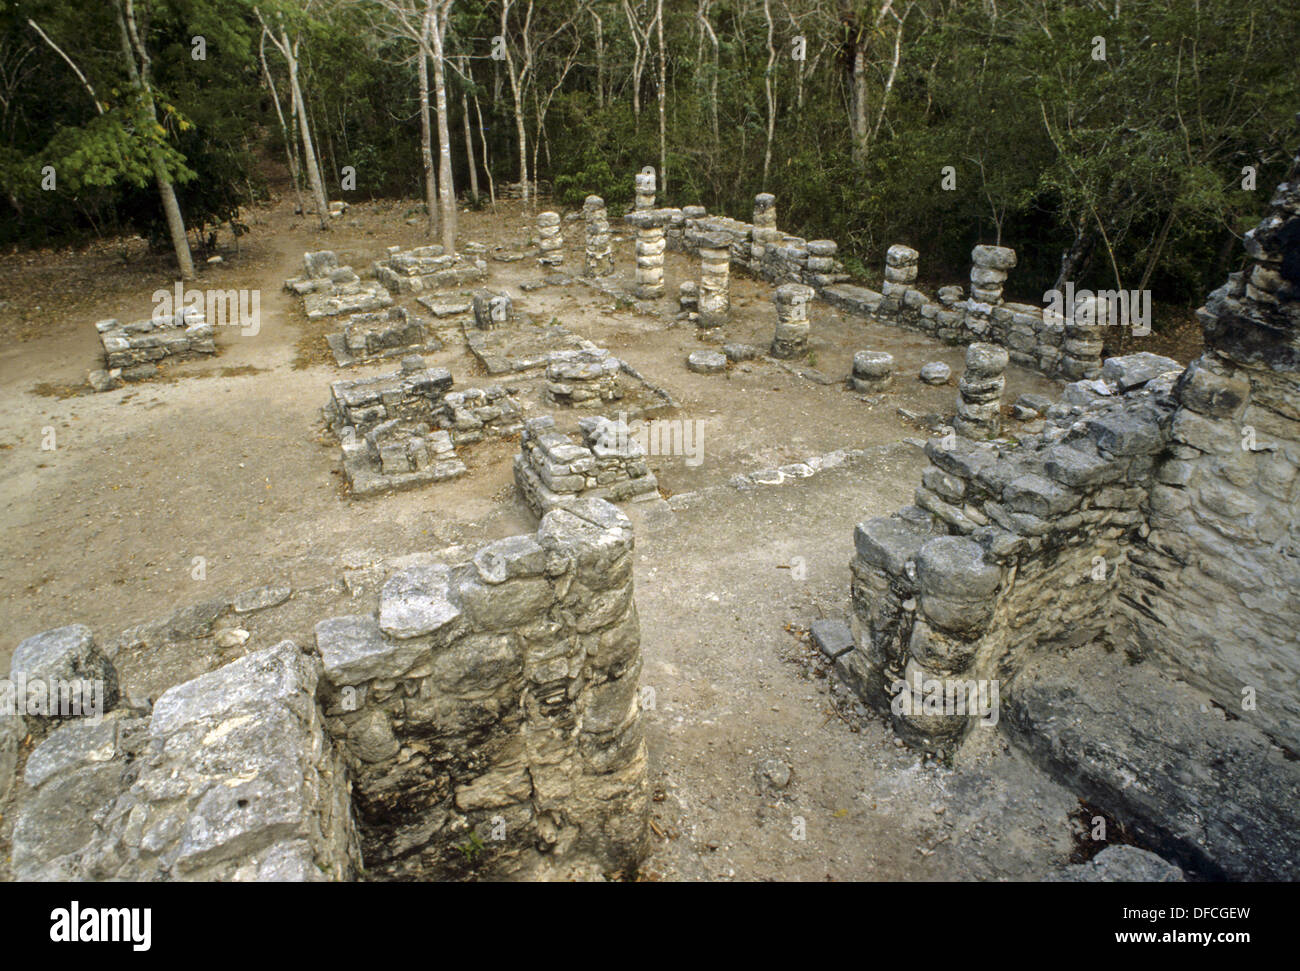 Coba, ciudad en ruinas de la civilización maya precolombina. Quintana Roo, México. Foto de stock